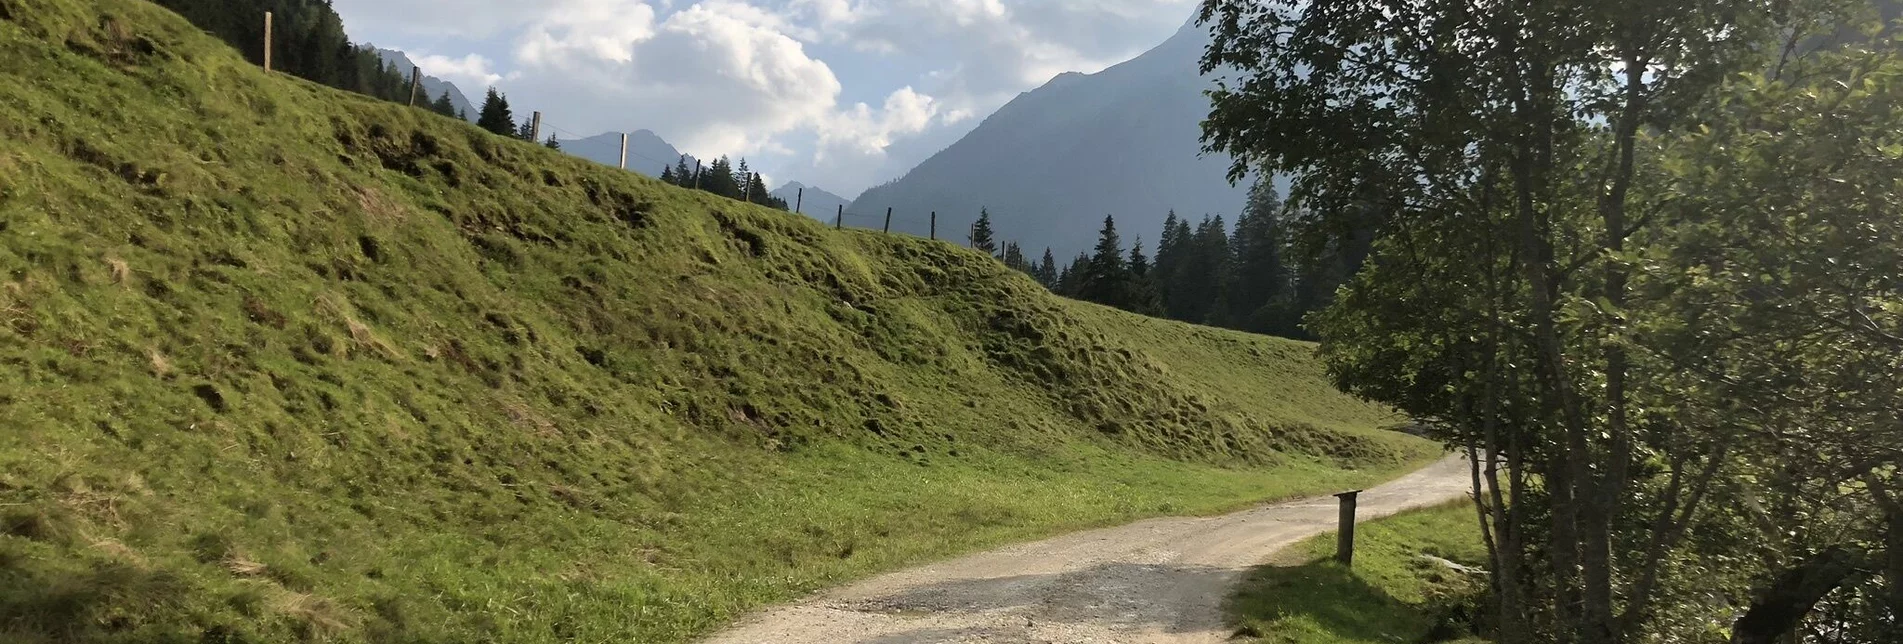 Nature Trail "Secrets of water" - Touren-Impression #1 | © Erlebnisregion Schladming-Dachstein